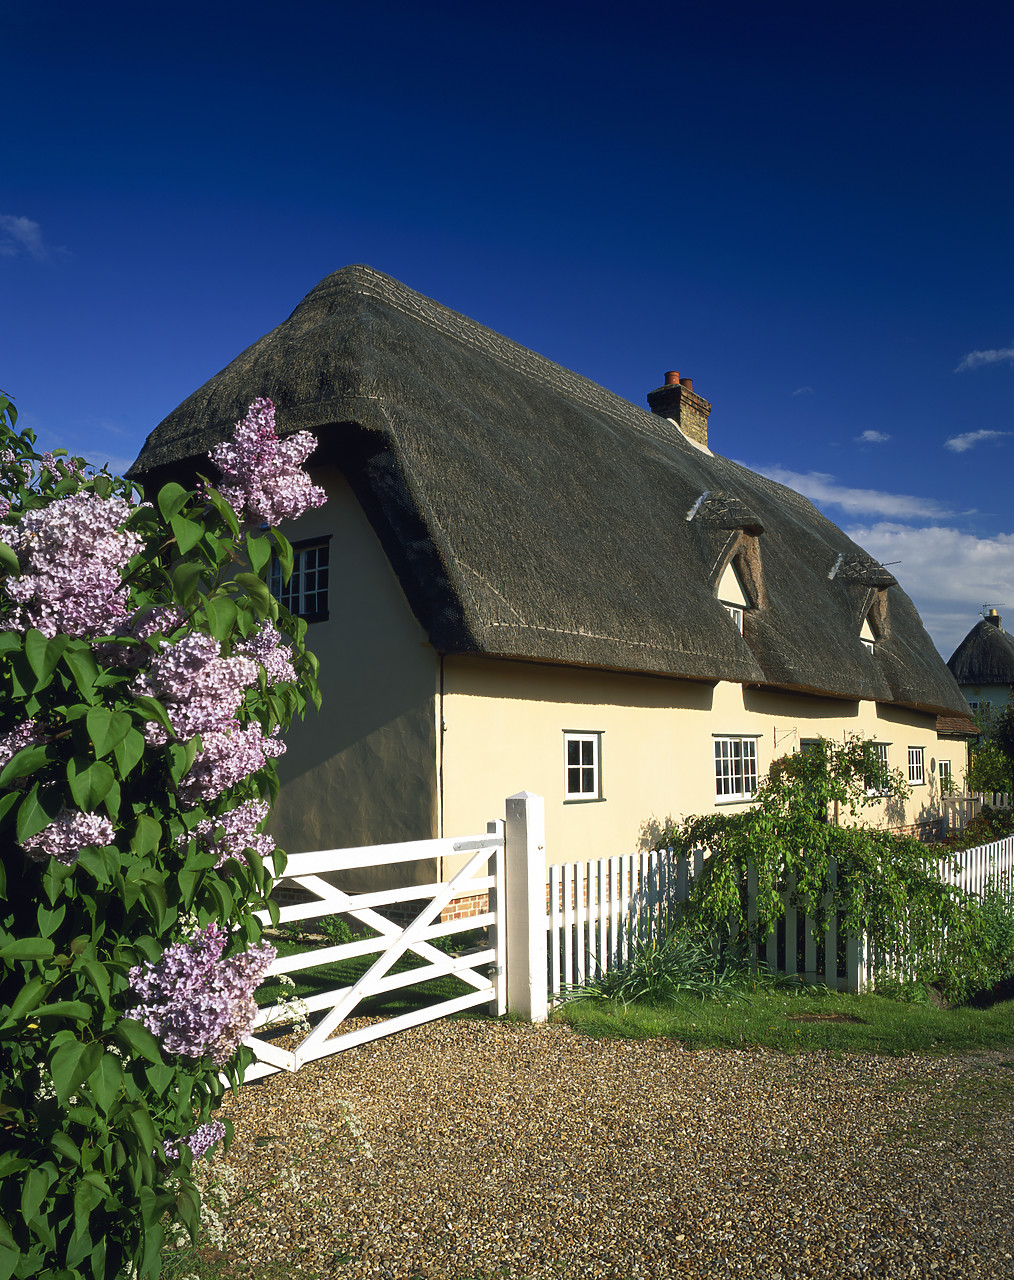 #050132-4 - Thatched Cottage, Barrington, Cambridgeshire, England